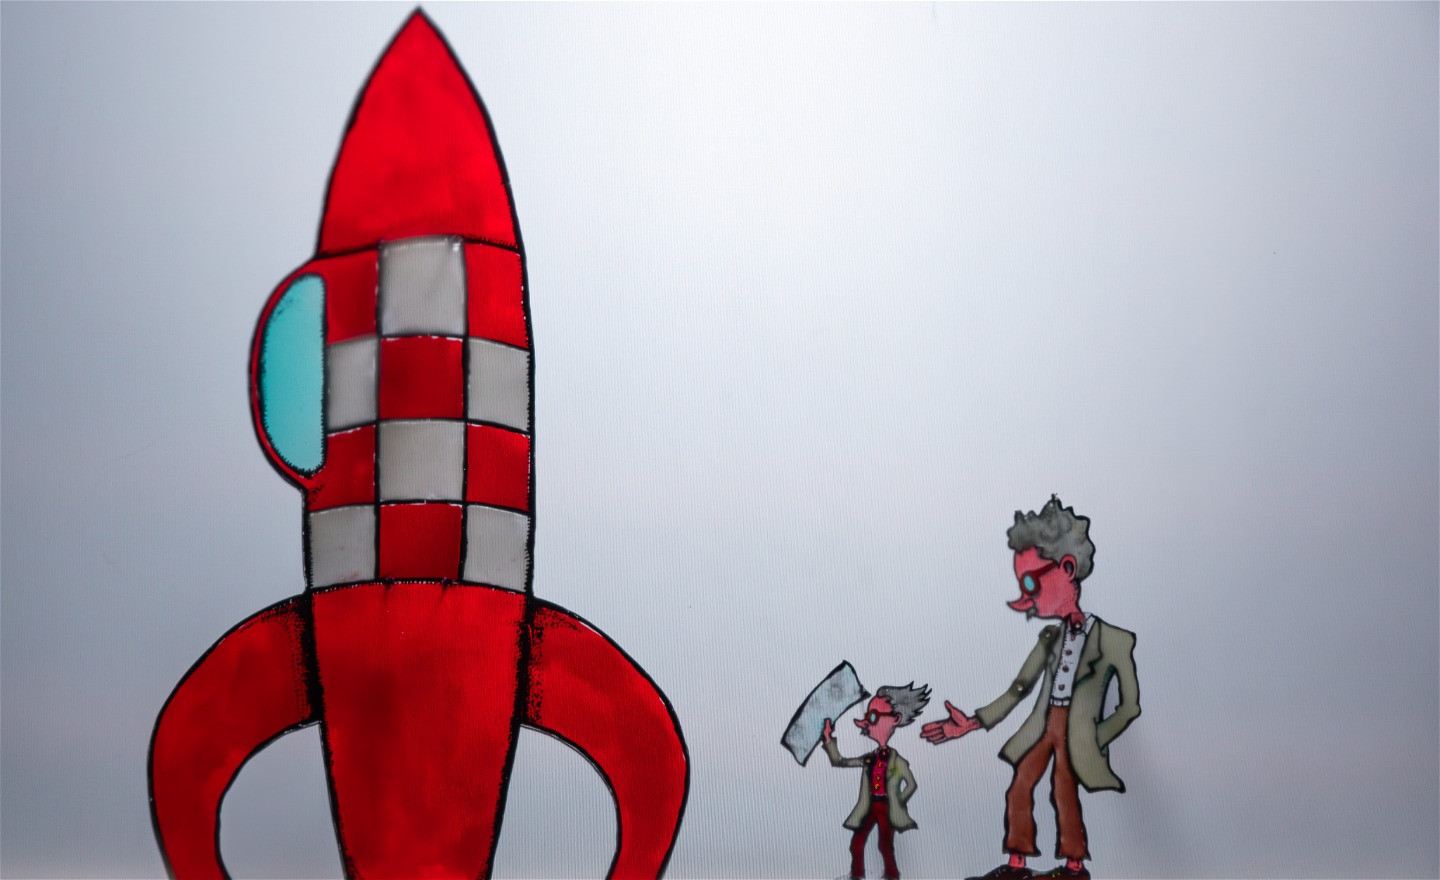 Färgskuggspel: Albert och Einstein på väg att borda raketen som ska ta dom till den punkt där papperslappen dom har med sig inte längre påverkas av tyngdkraften.